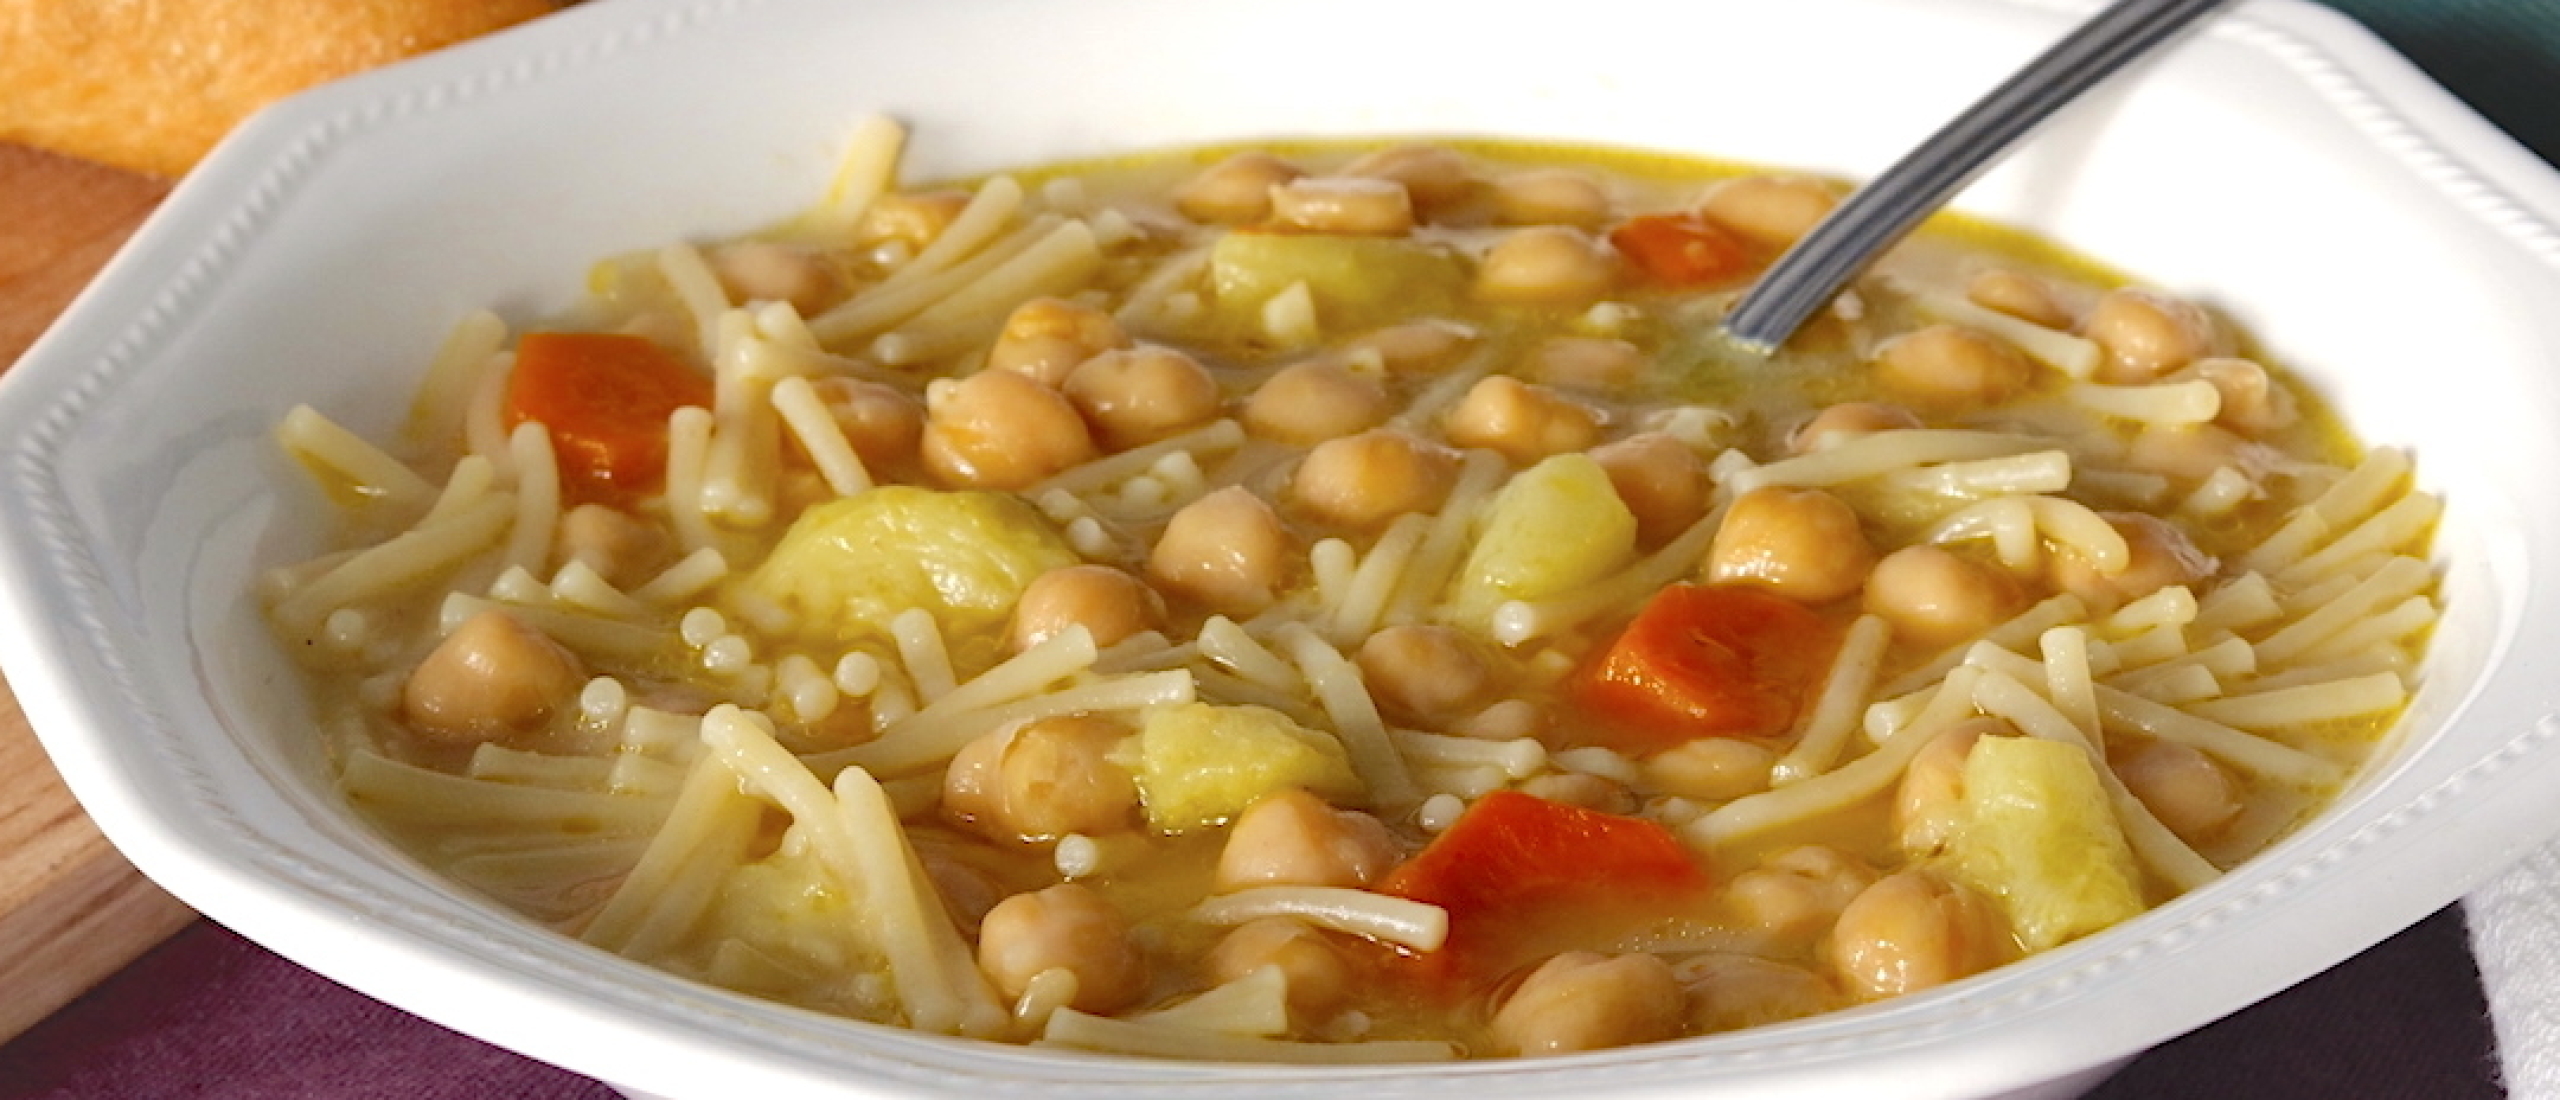 Bouillon soep met kikkererwten (sopa de cocido con garbanzos)